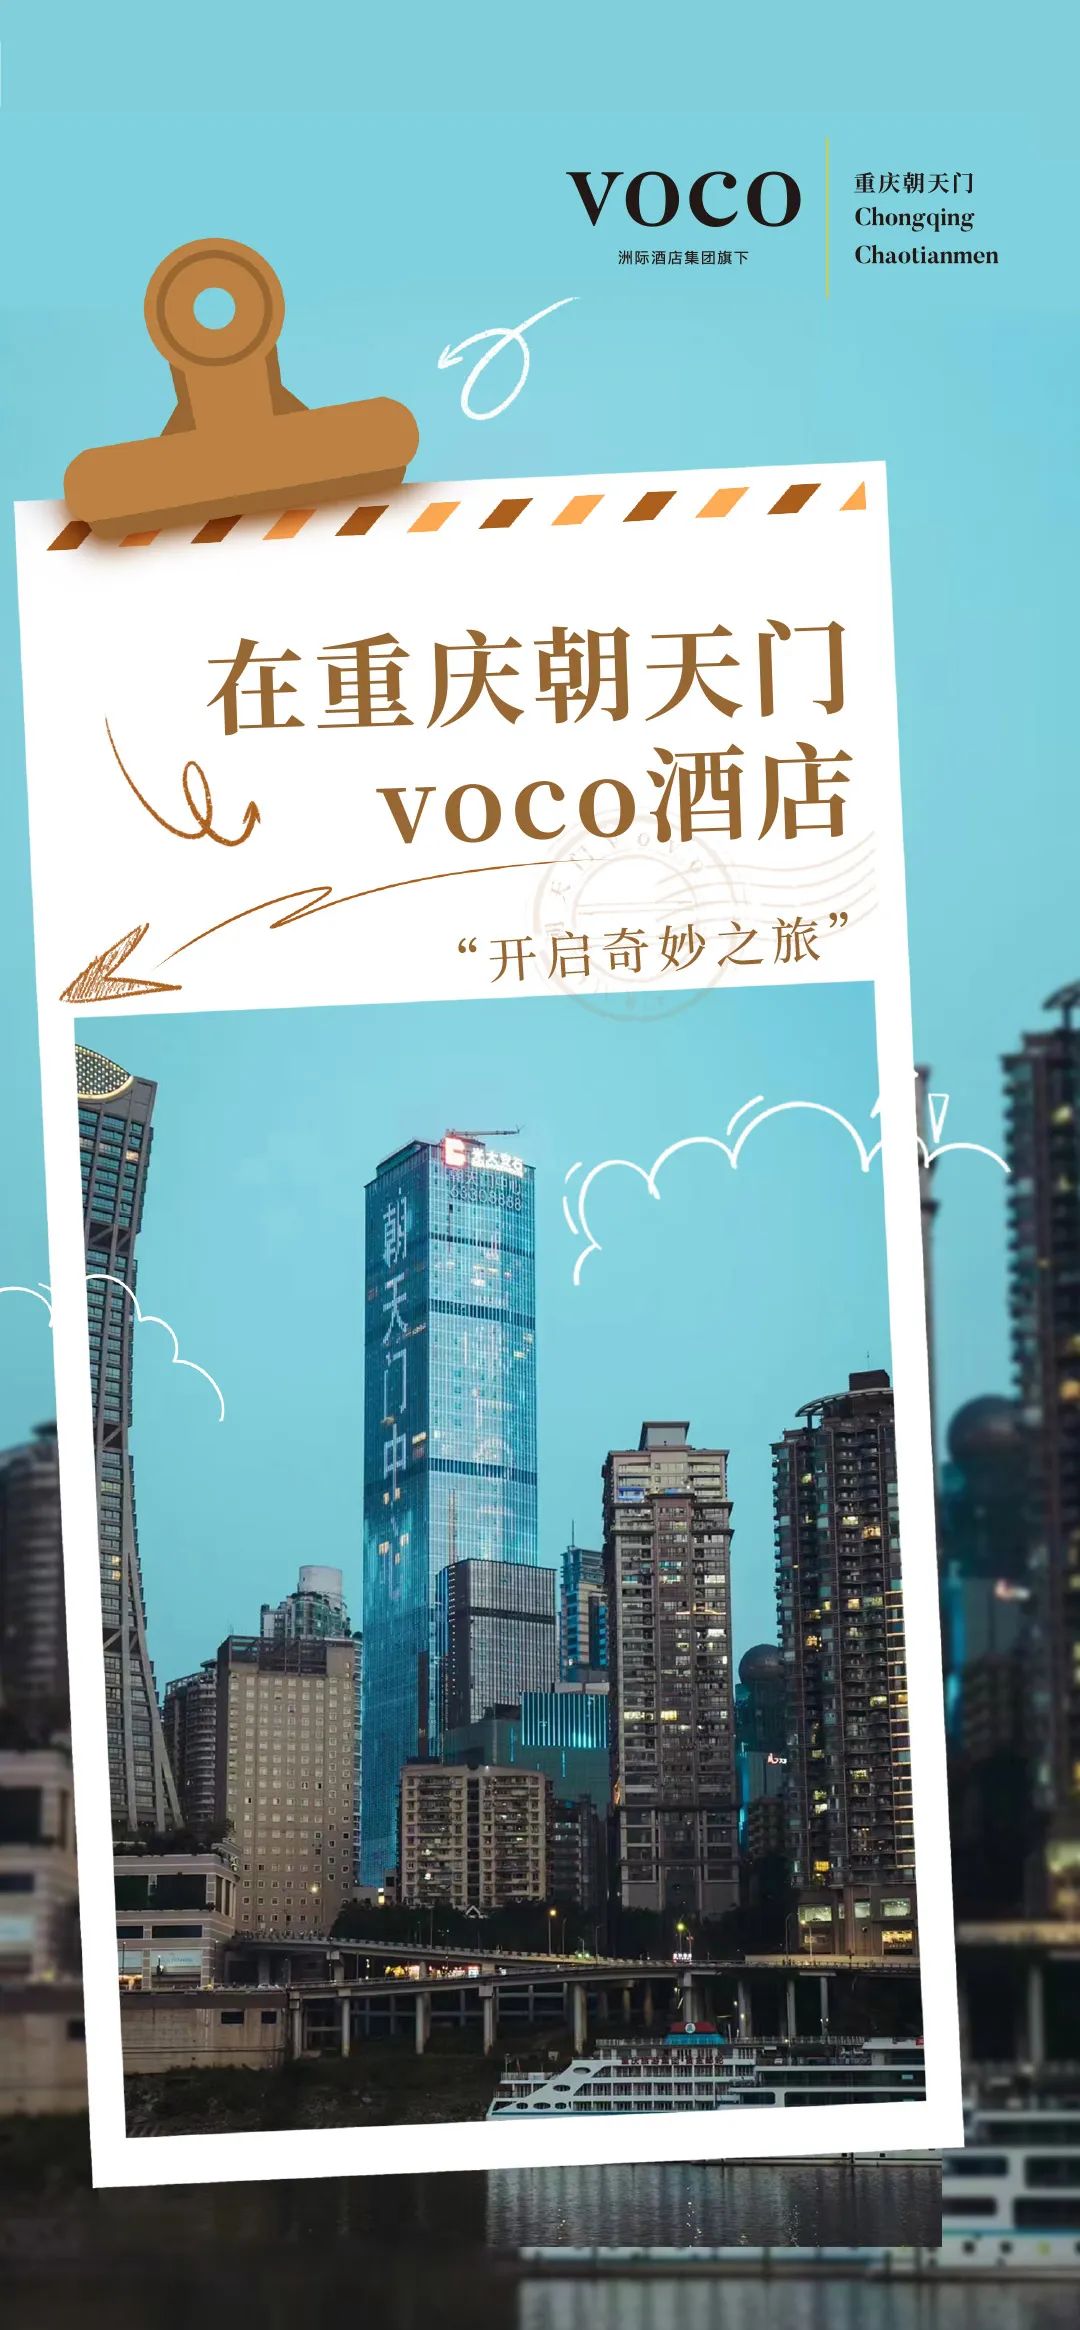 在重庆朝天门voco酒店“开启奇妙之旅”